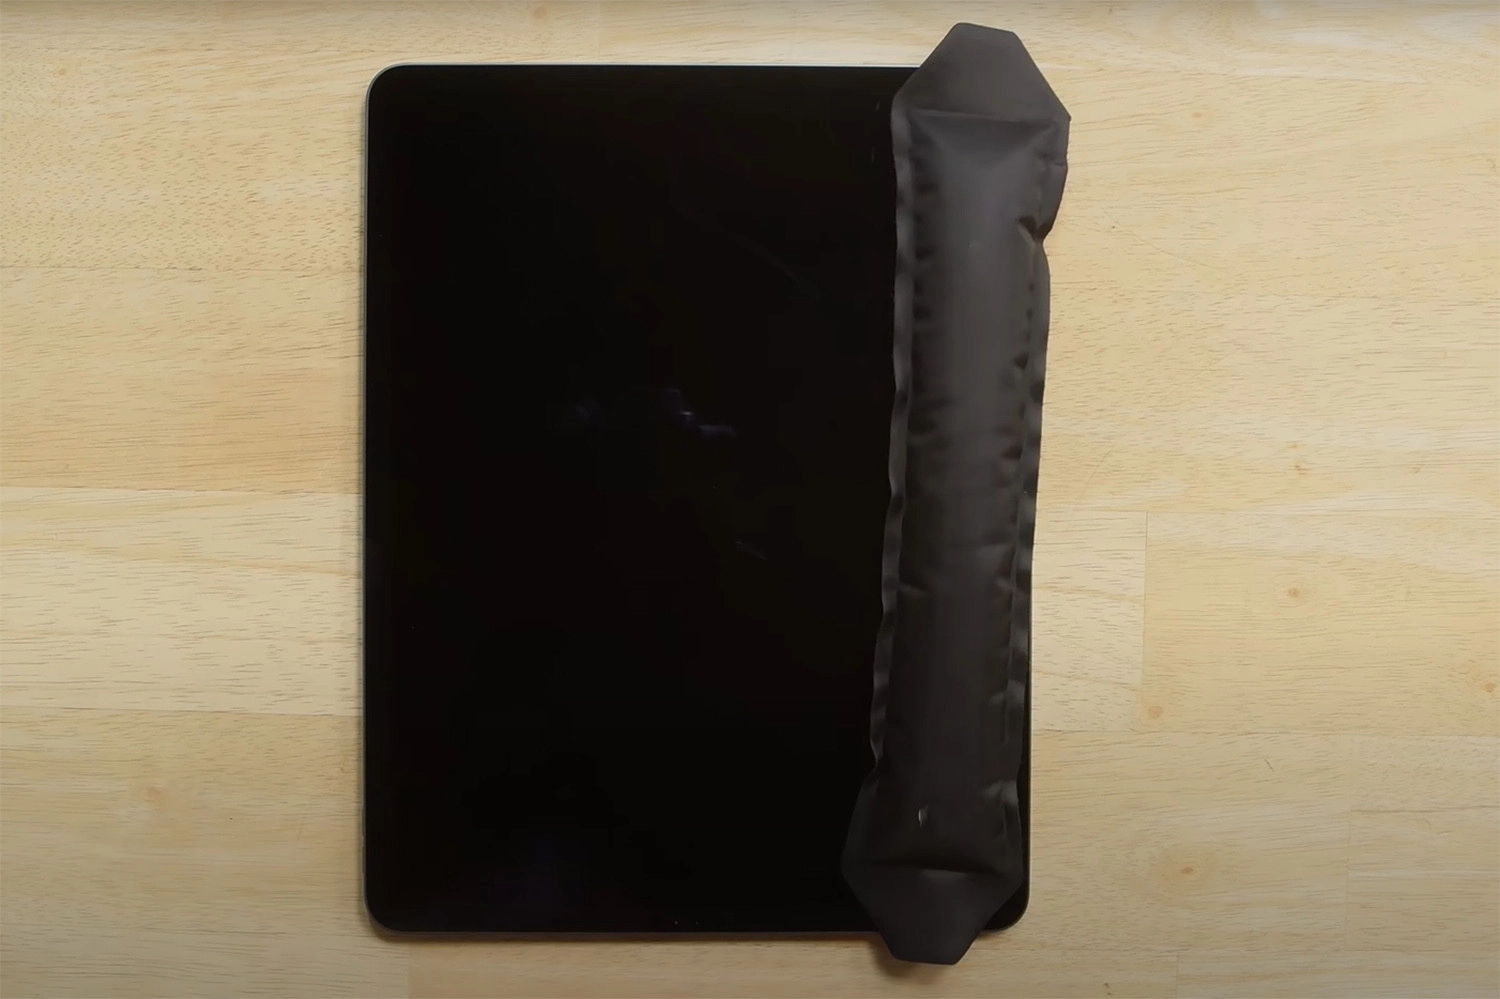 Nguyên nhân khiến iPad Pro 12.9 inch 2018 bị hỏng màn hình